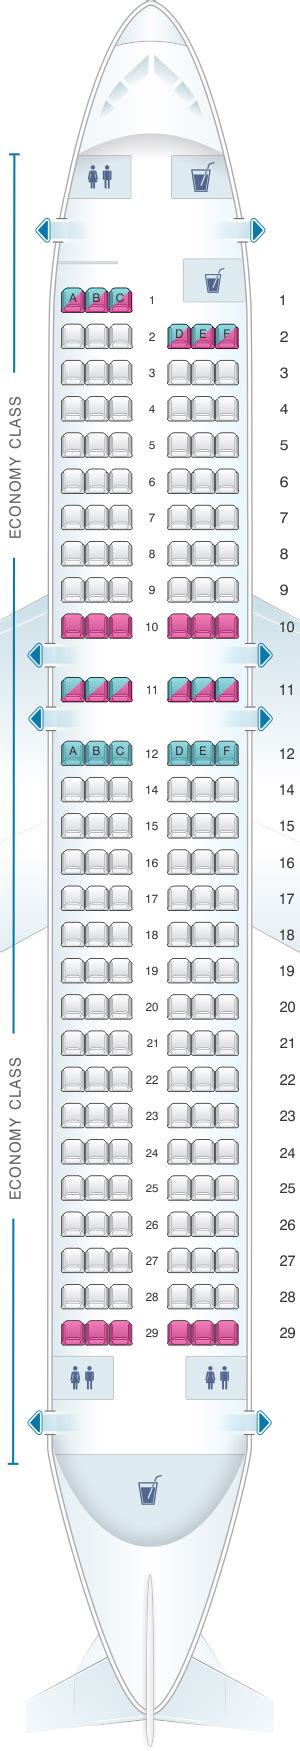 aircraft seating chart